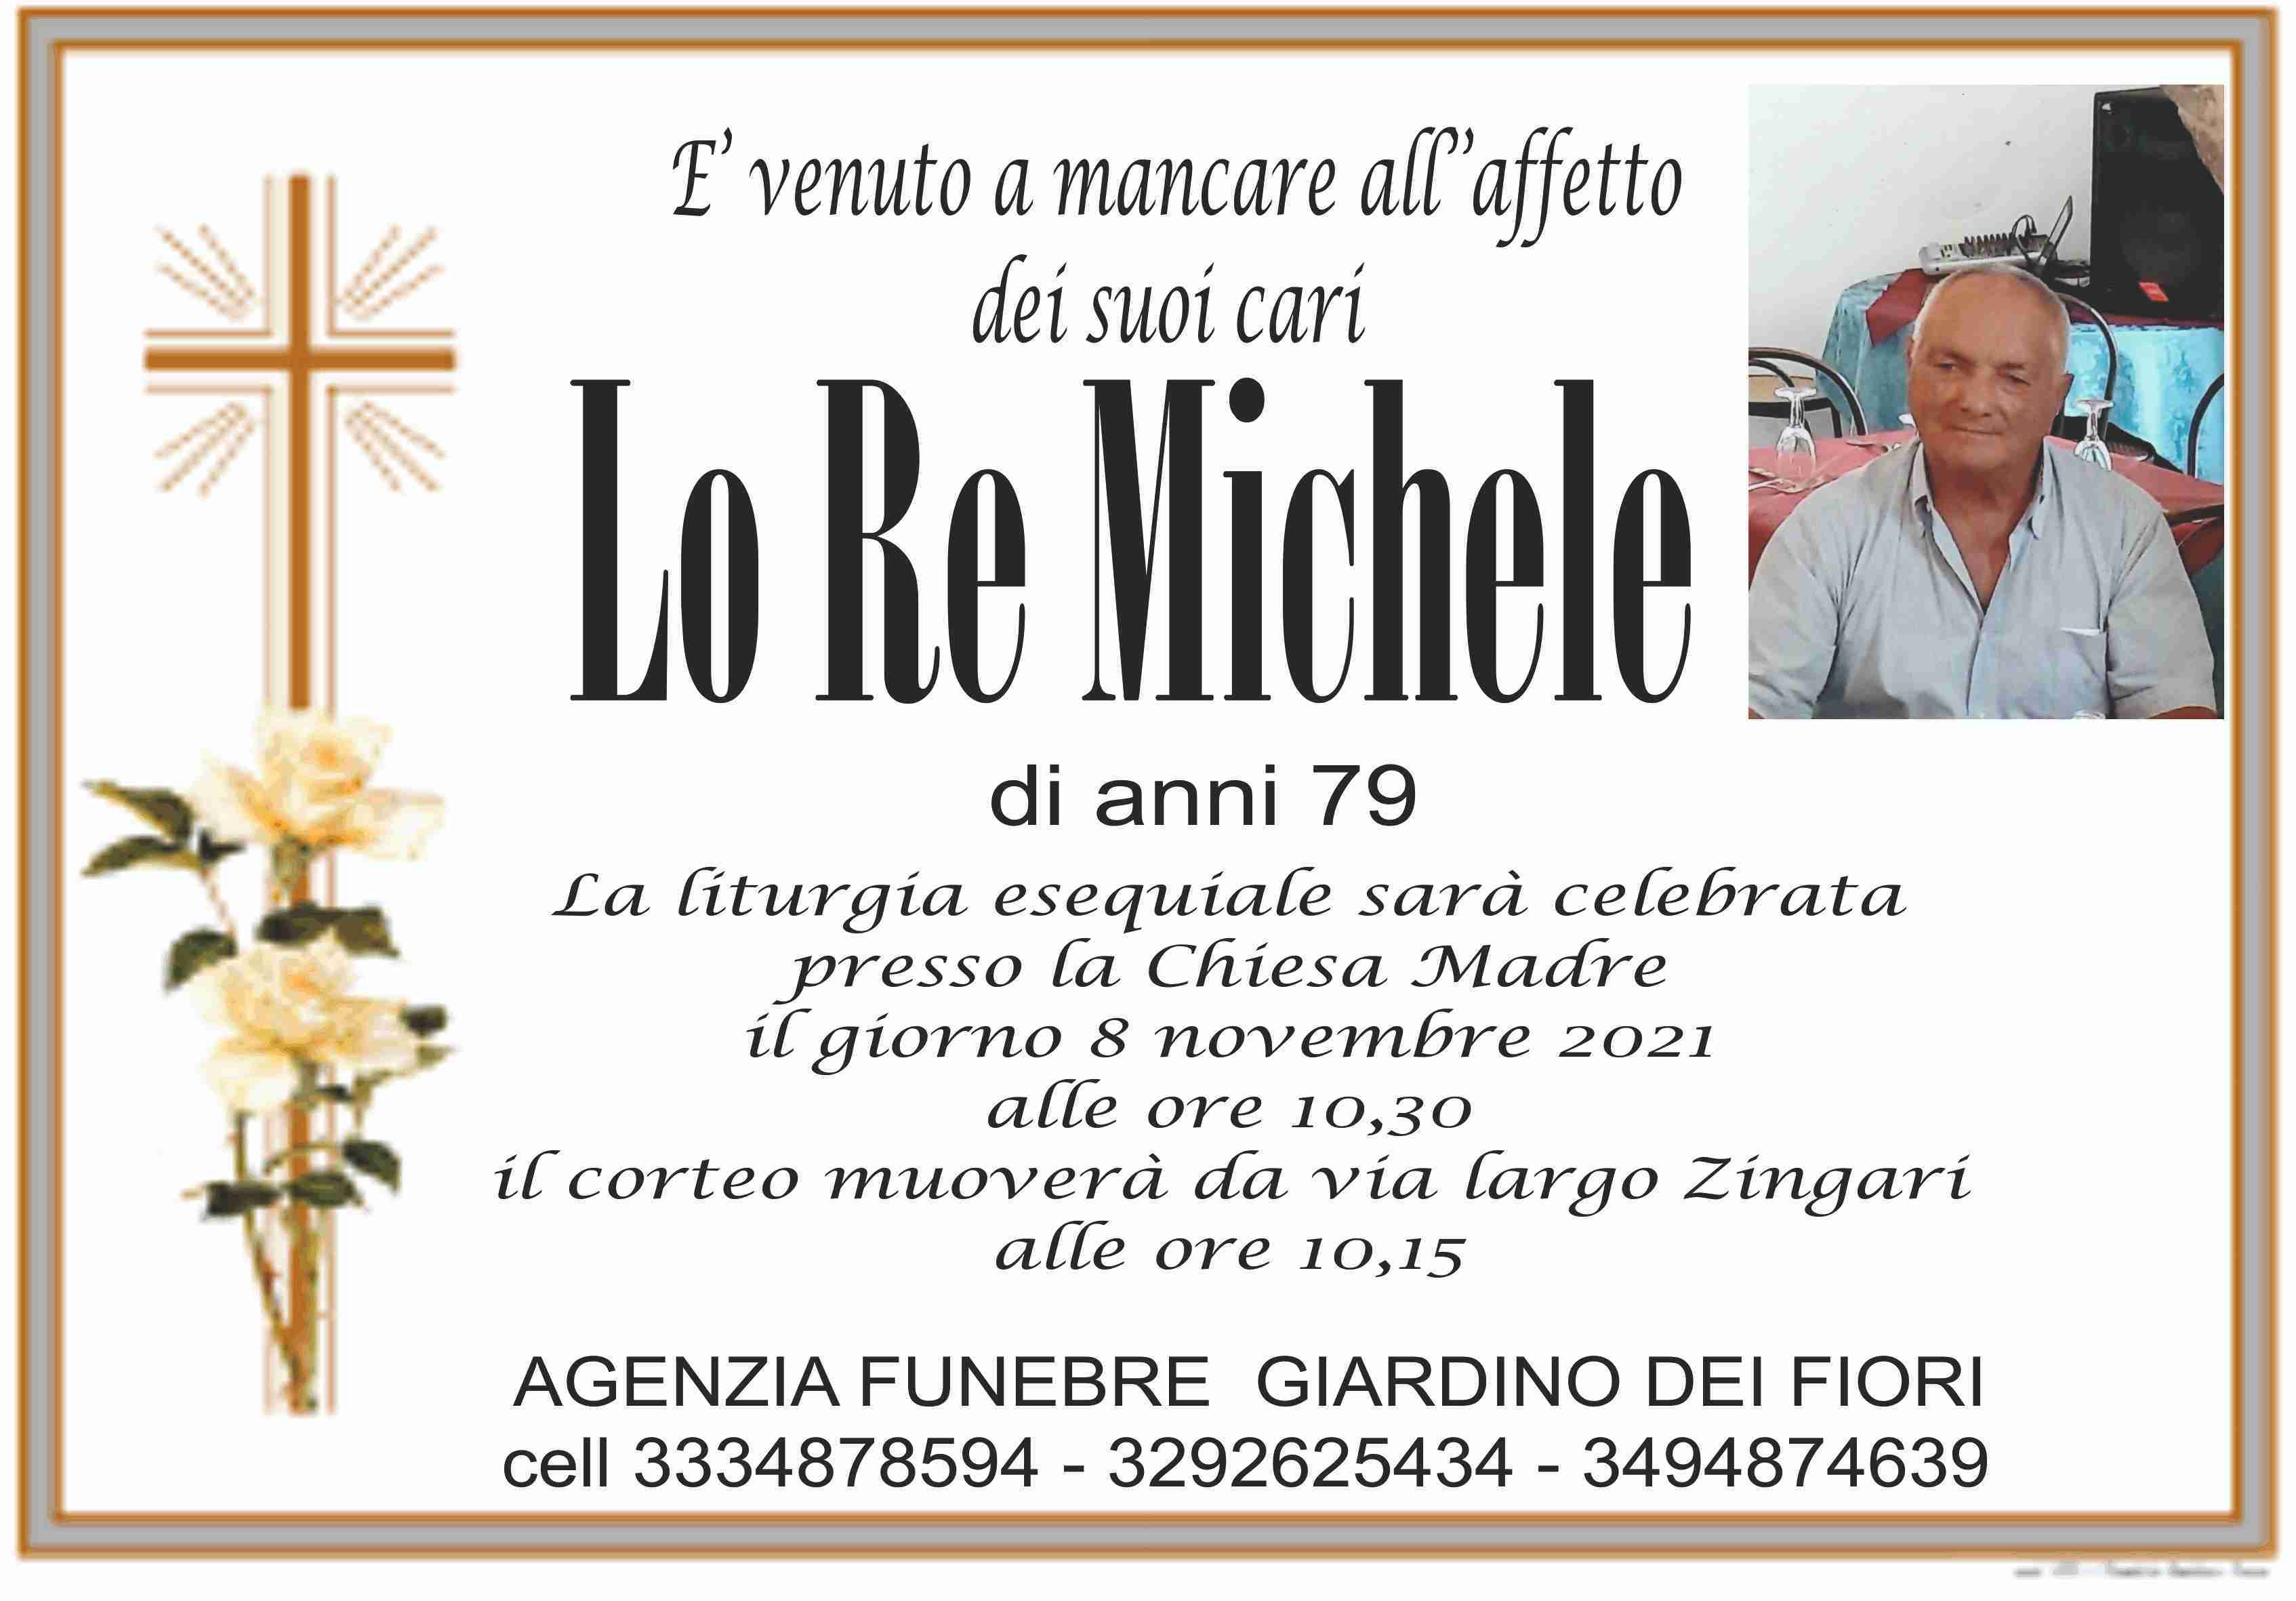 Michele Lo Re